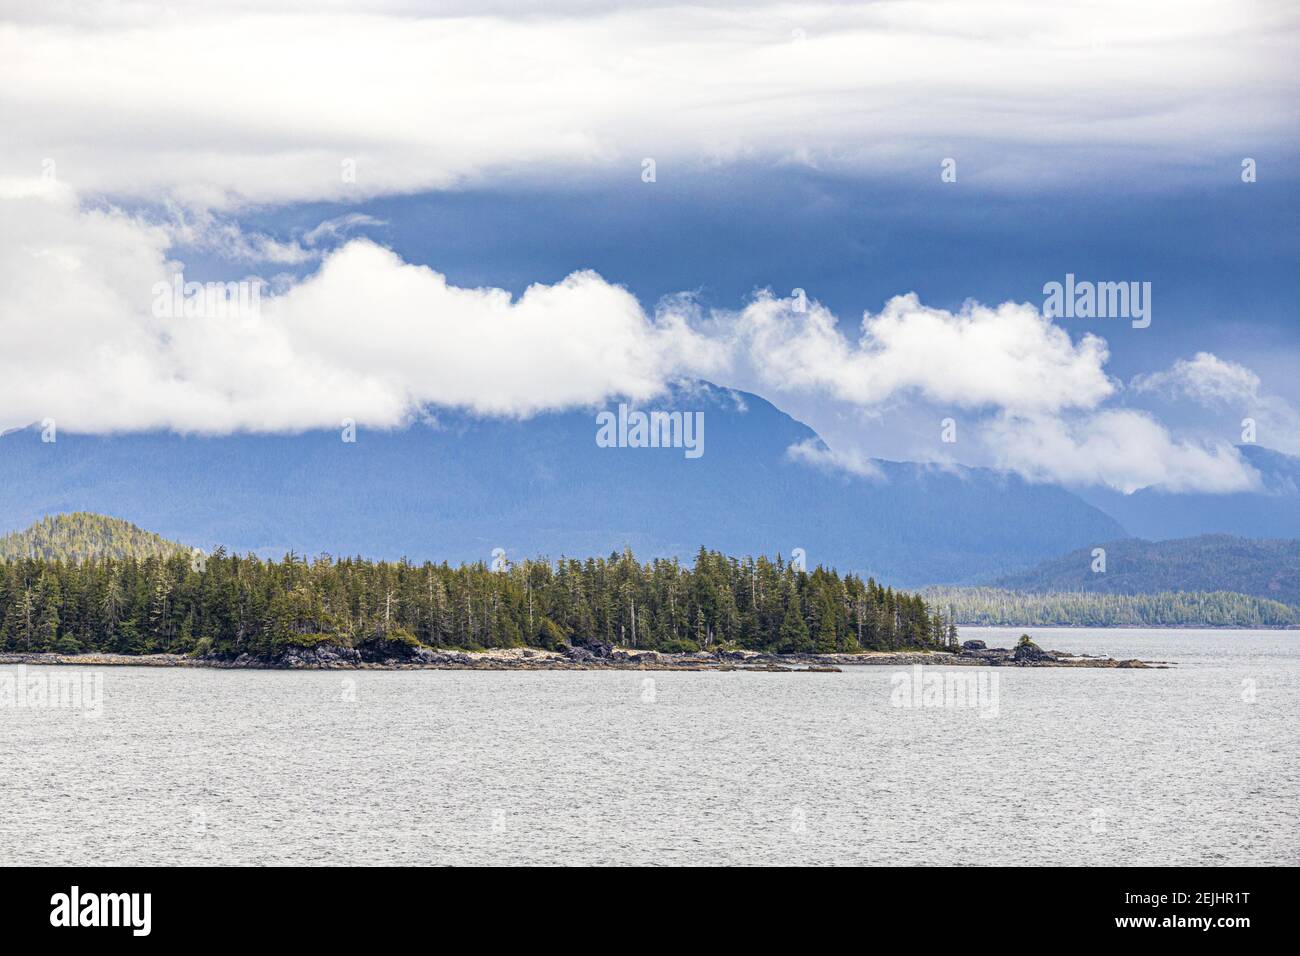 Une vue imprenable sur la côte nord-ouest du Pacifique à Princess Royal Island, Colombie-Britannique, Canada - vue depuis un bateau de croisière naviguant dans le passage intérieur Banque D'Images